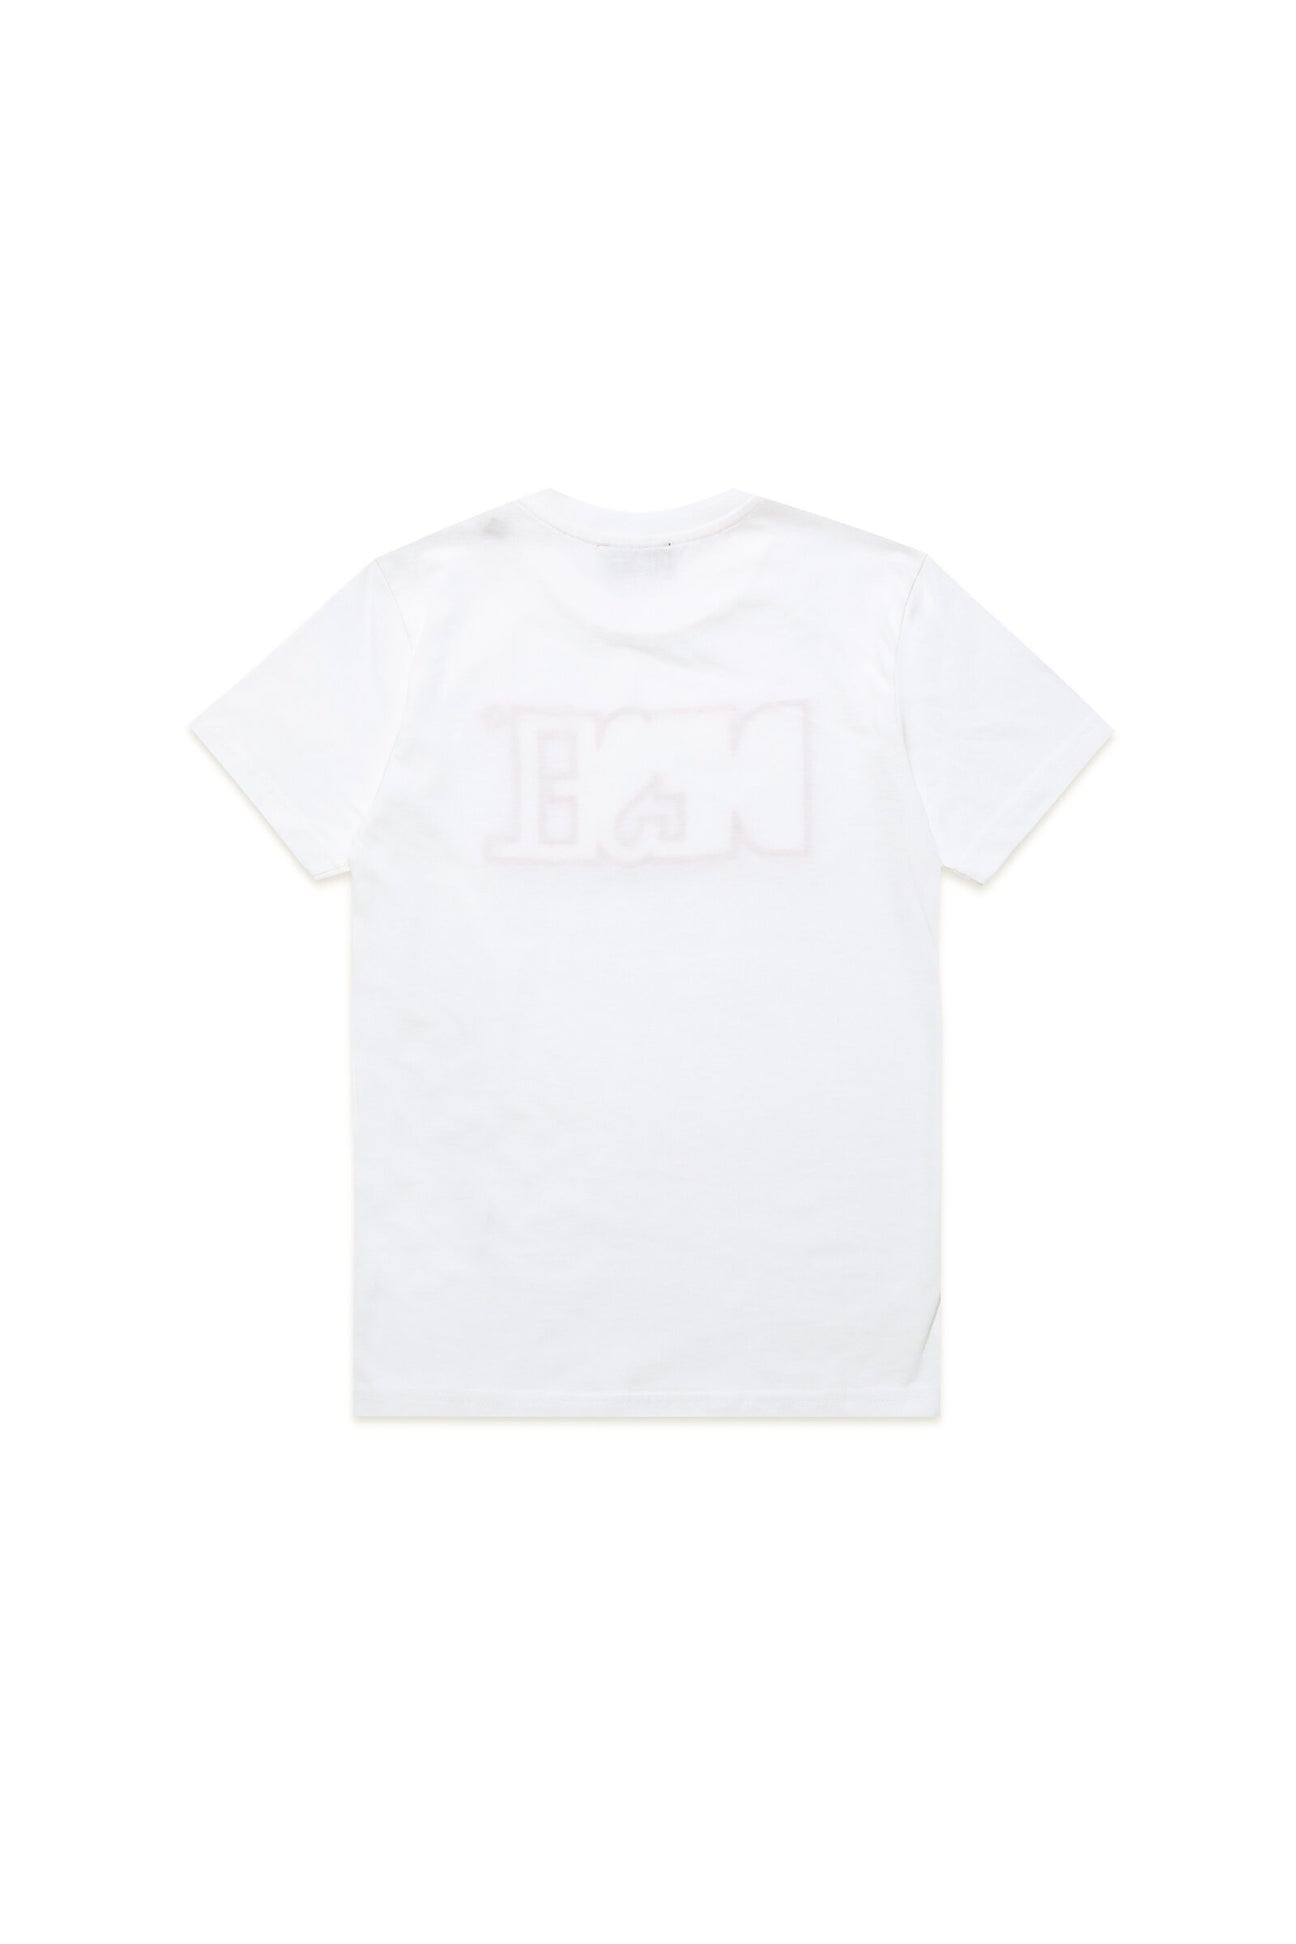 Camiseta blanca con aplicación del logotipo Diesel Camiseta blanca con aplicación del logotipo Diesel